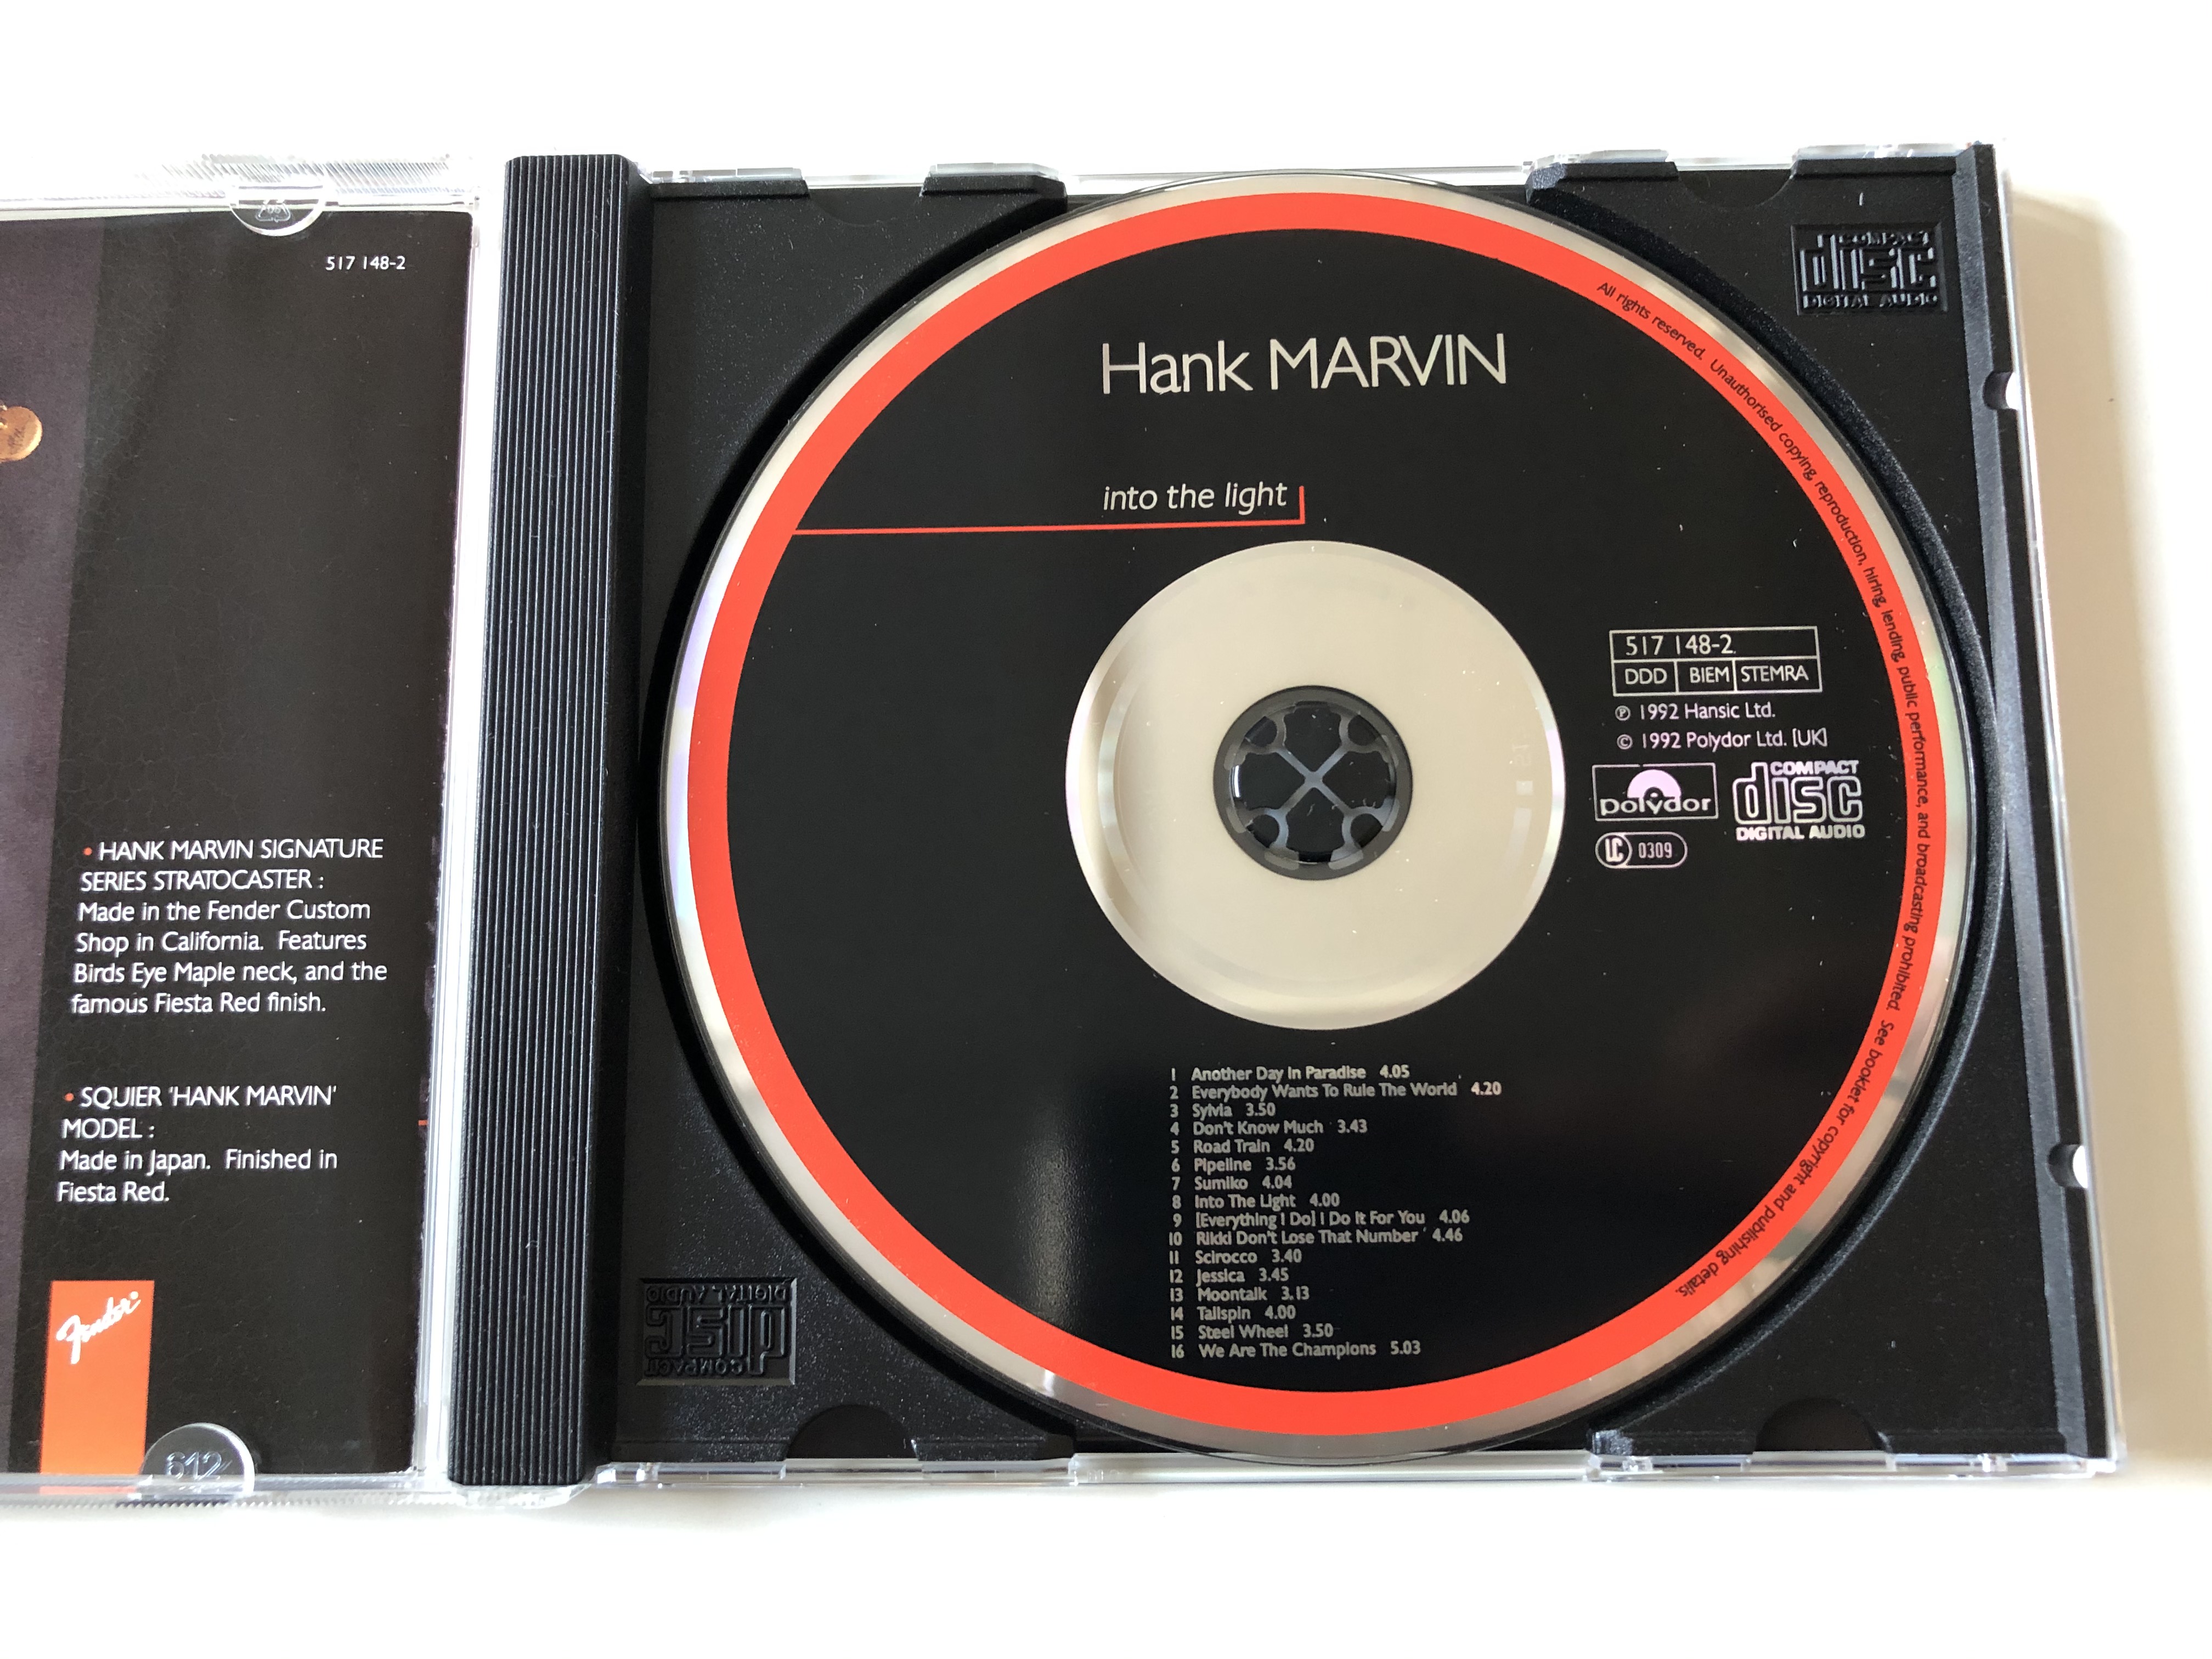 hank-marvin-into-the-light-polygram-tv-audio-cd-1992-517-148-2-5-.jpg